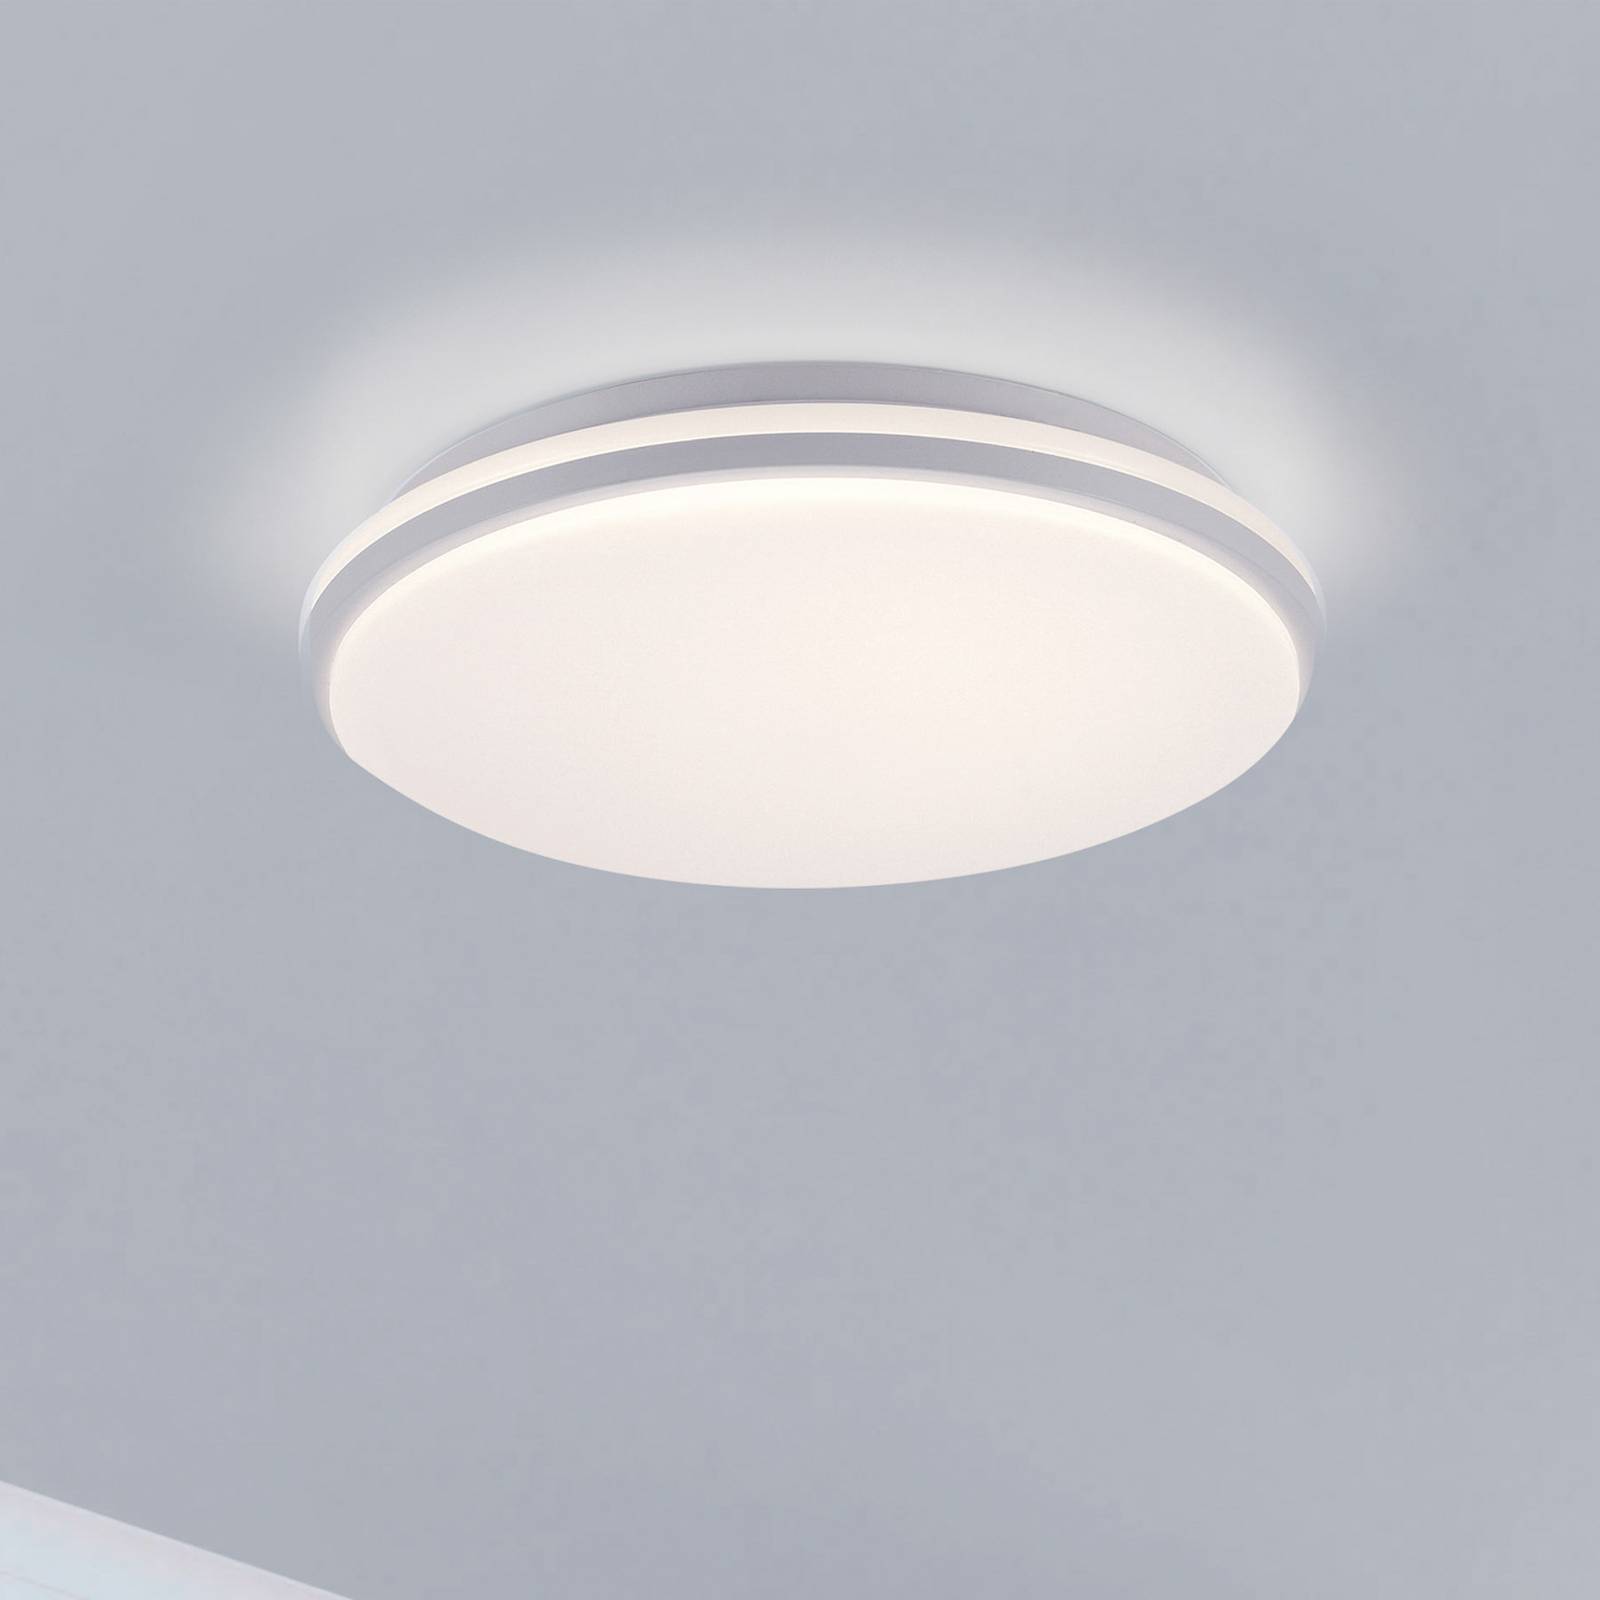 LED lámpa Colin, 3 fok. szabály., Ø 34 cm